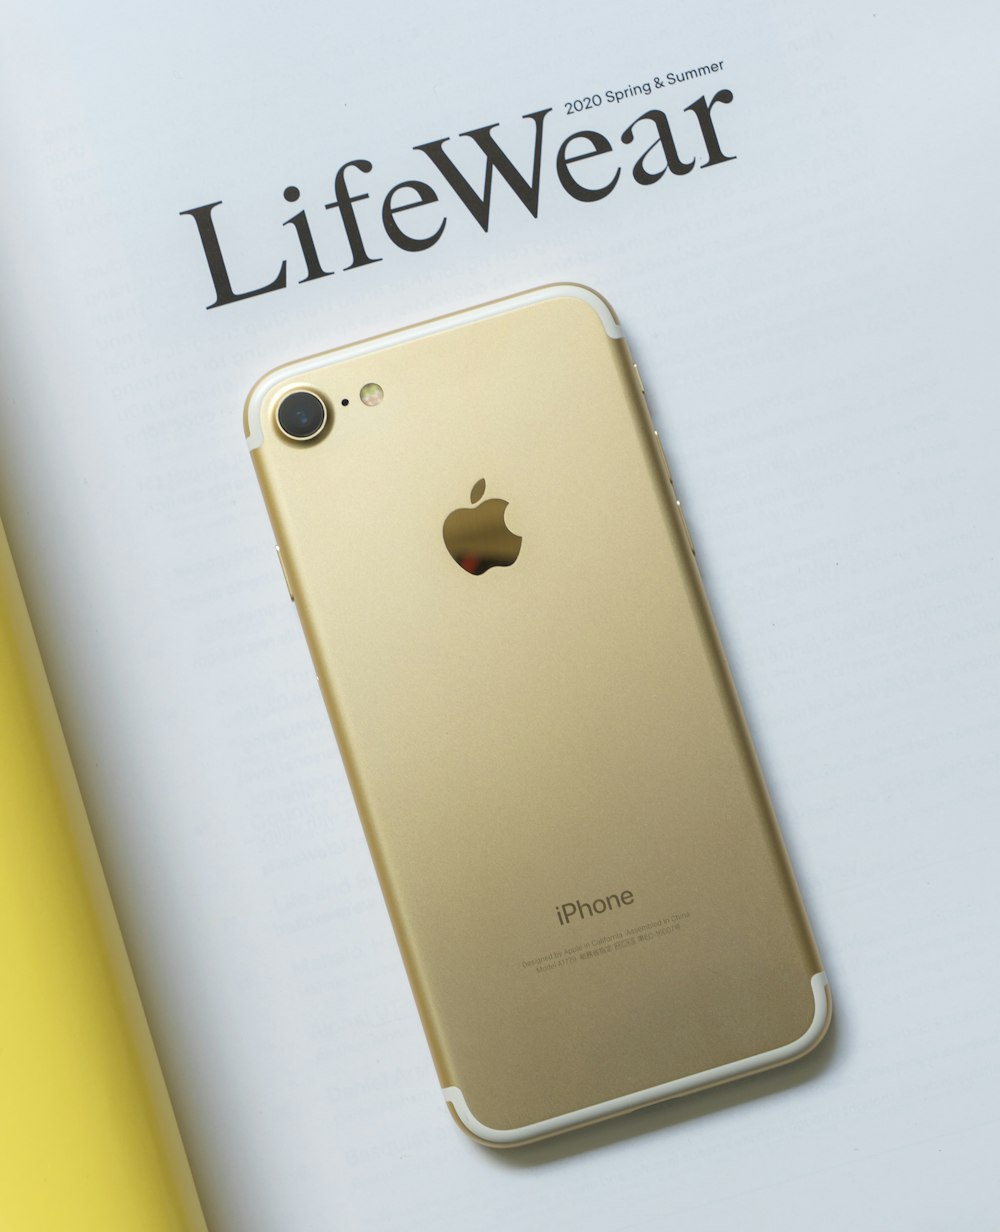 Gold iPhone 6 auf weißer Oberfläche